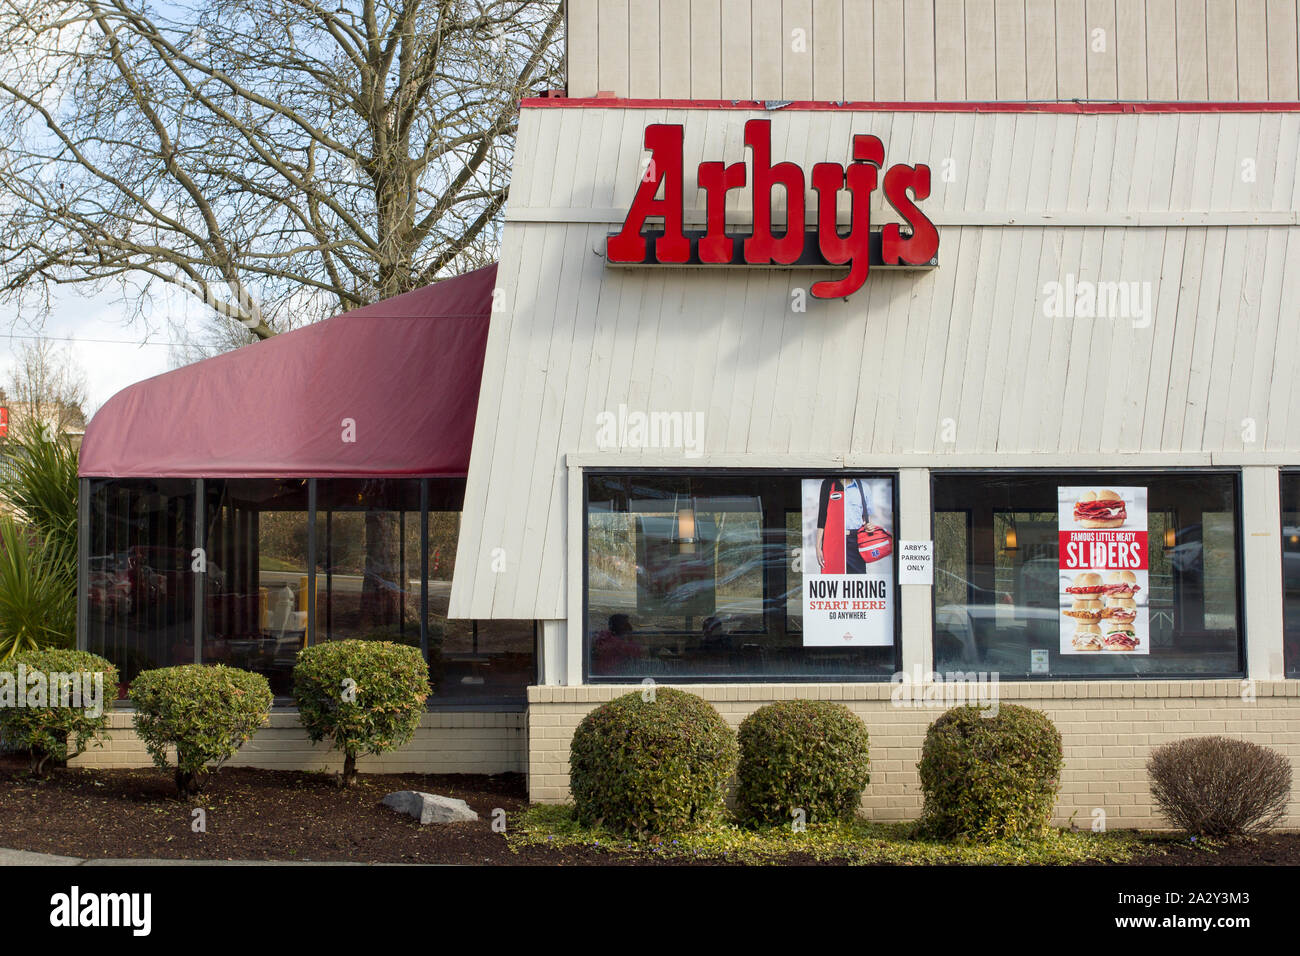 Beaverton, Oregon - Mar 12, 2019 : l'extérieur d'un restaurant Arby's. Arby's est un service rapide restaurant sandwich fast-food chain. Banque D'Images